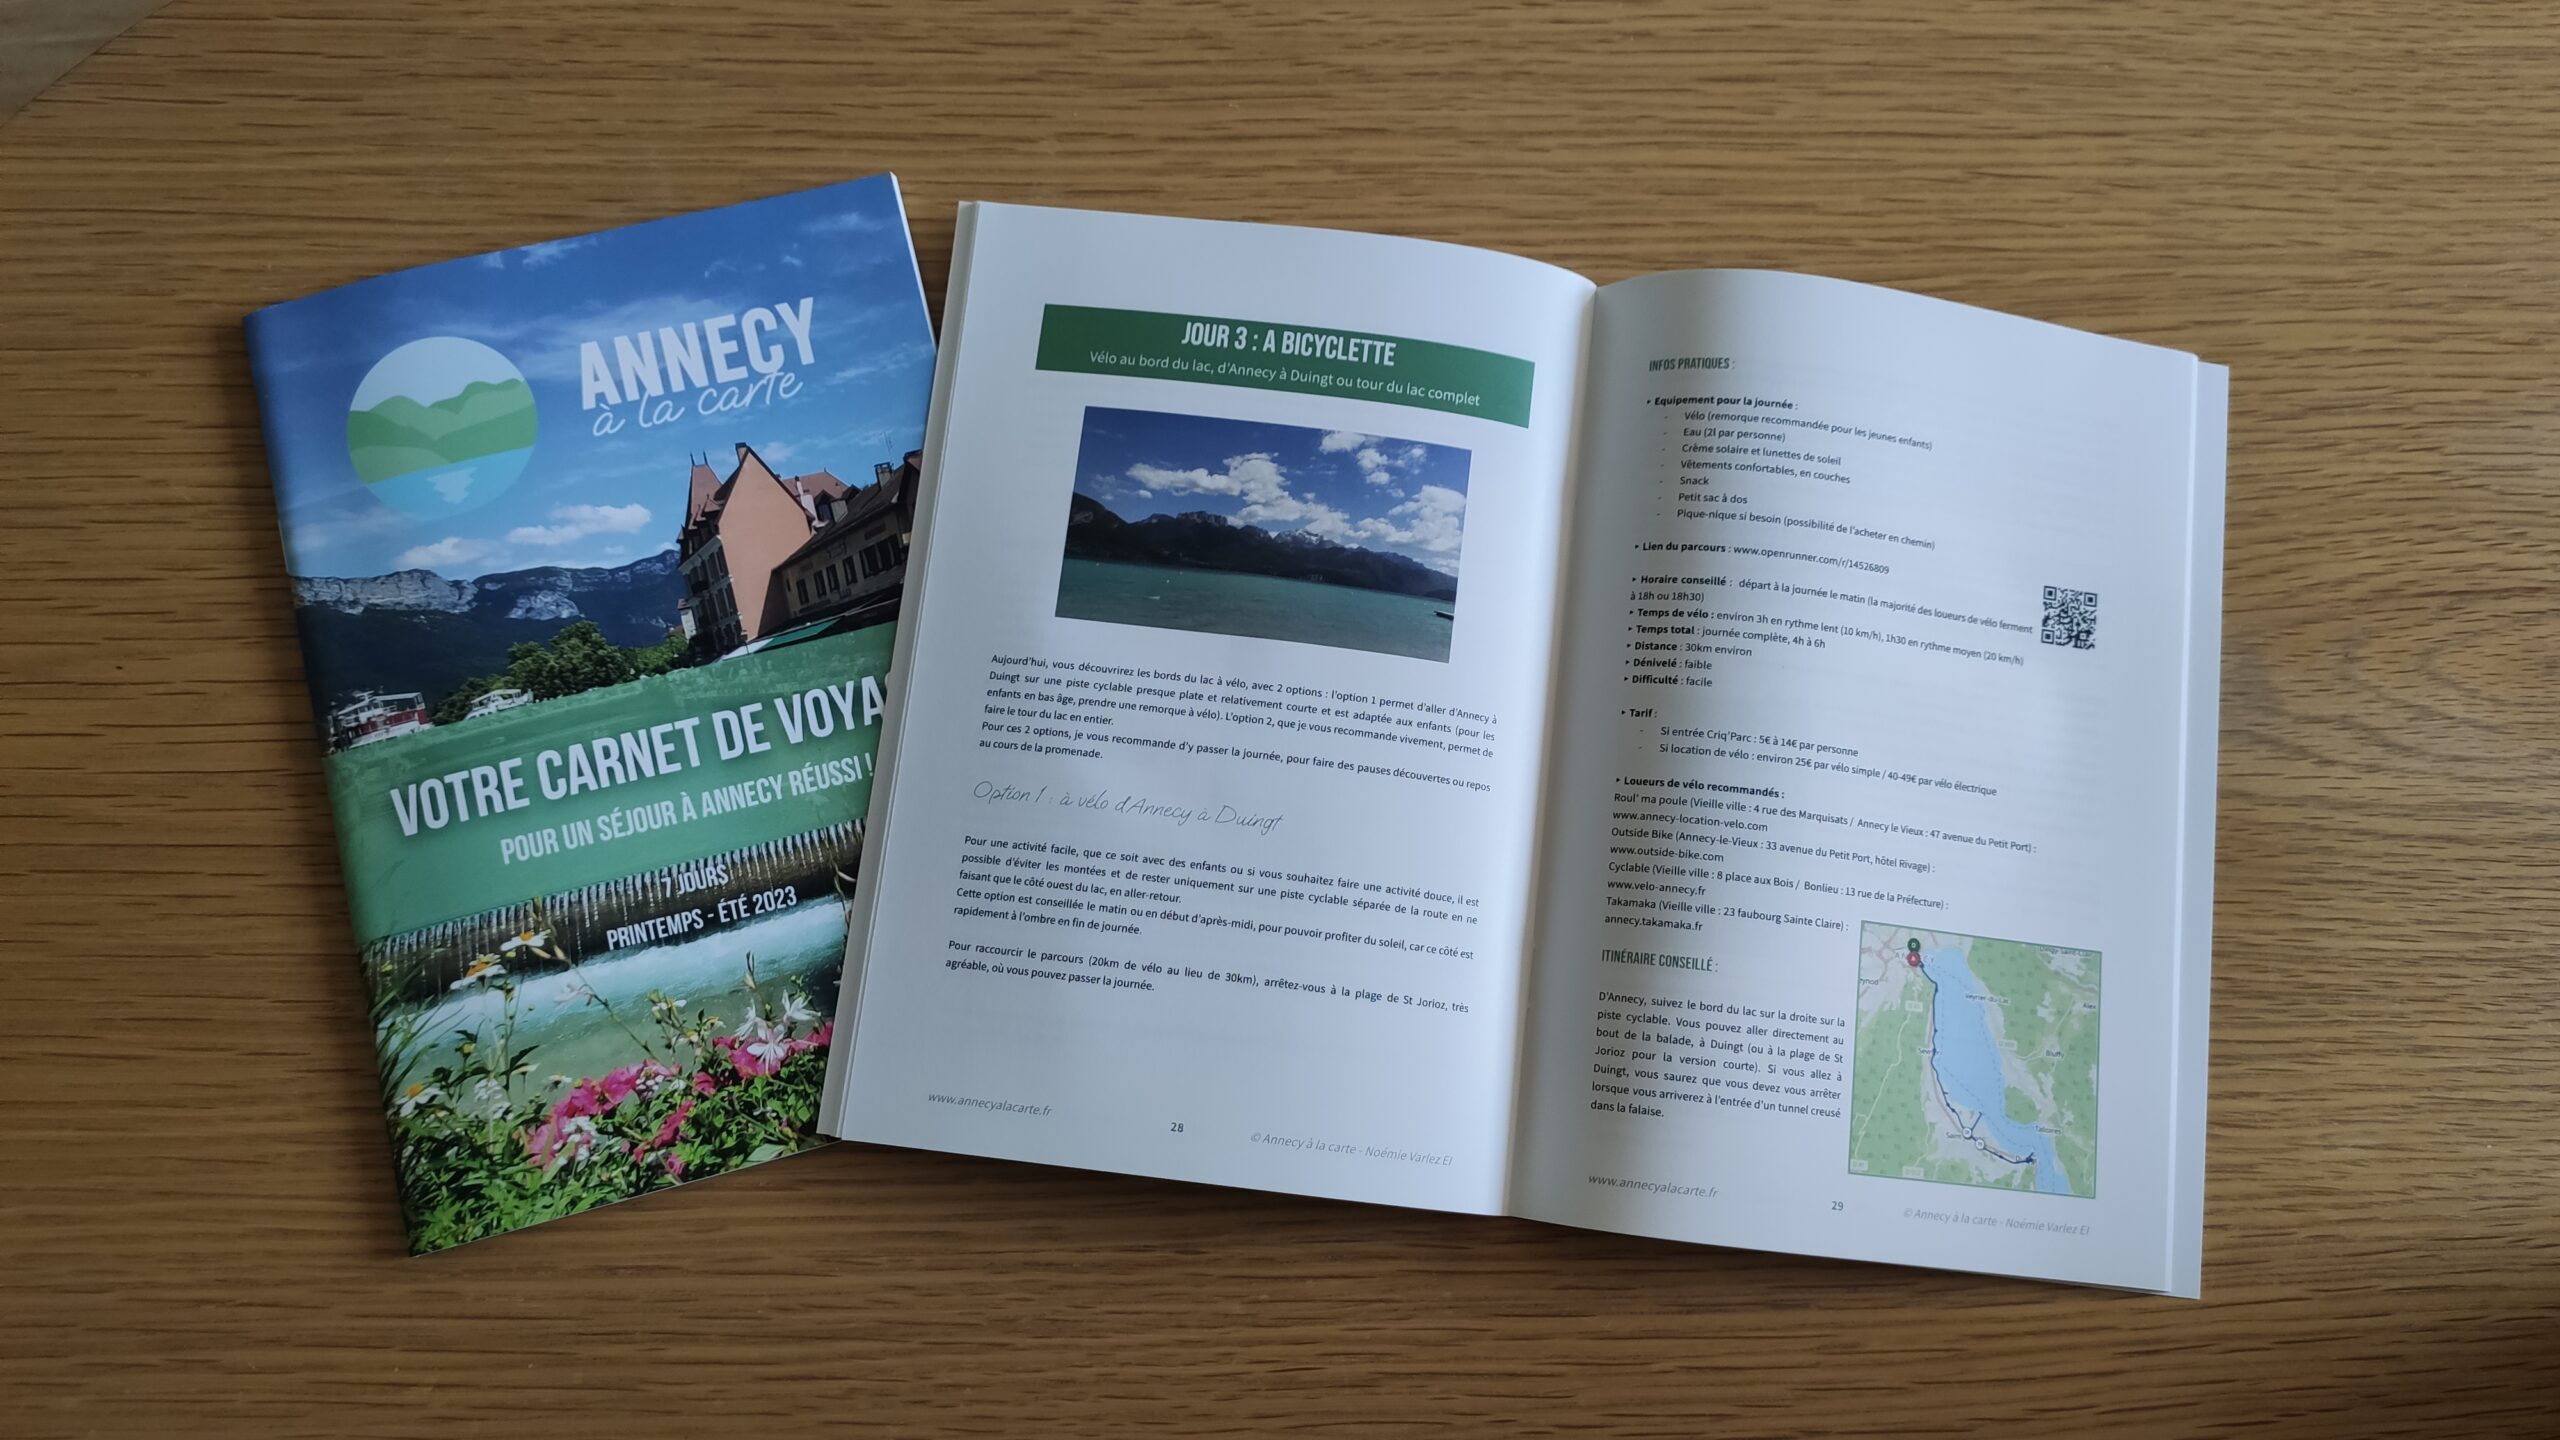 Voyage fraternel : carnet de route — Diocèse d'Annecy